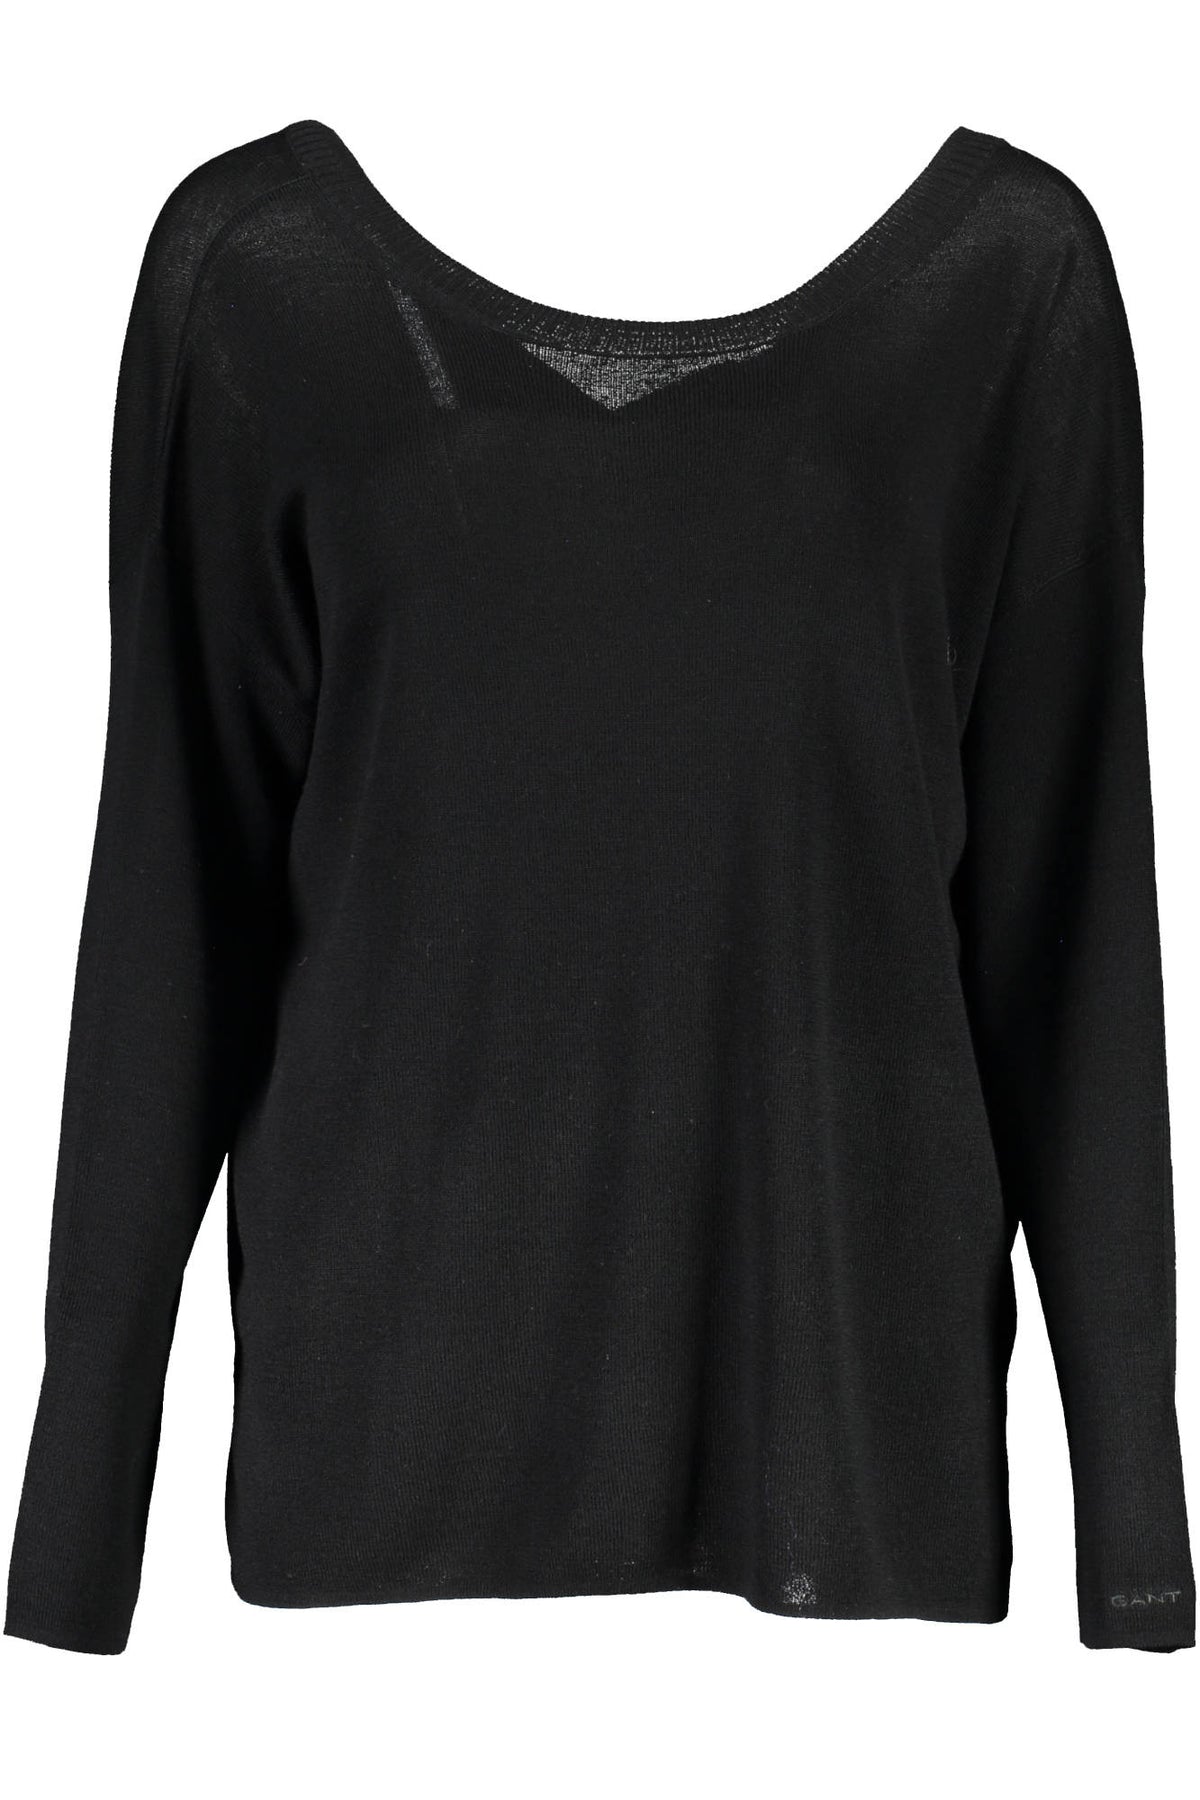 GANT Damen Designer Pullover mit rundem Ausschnitt, schwarz